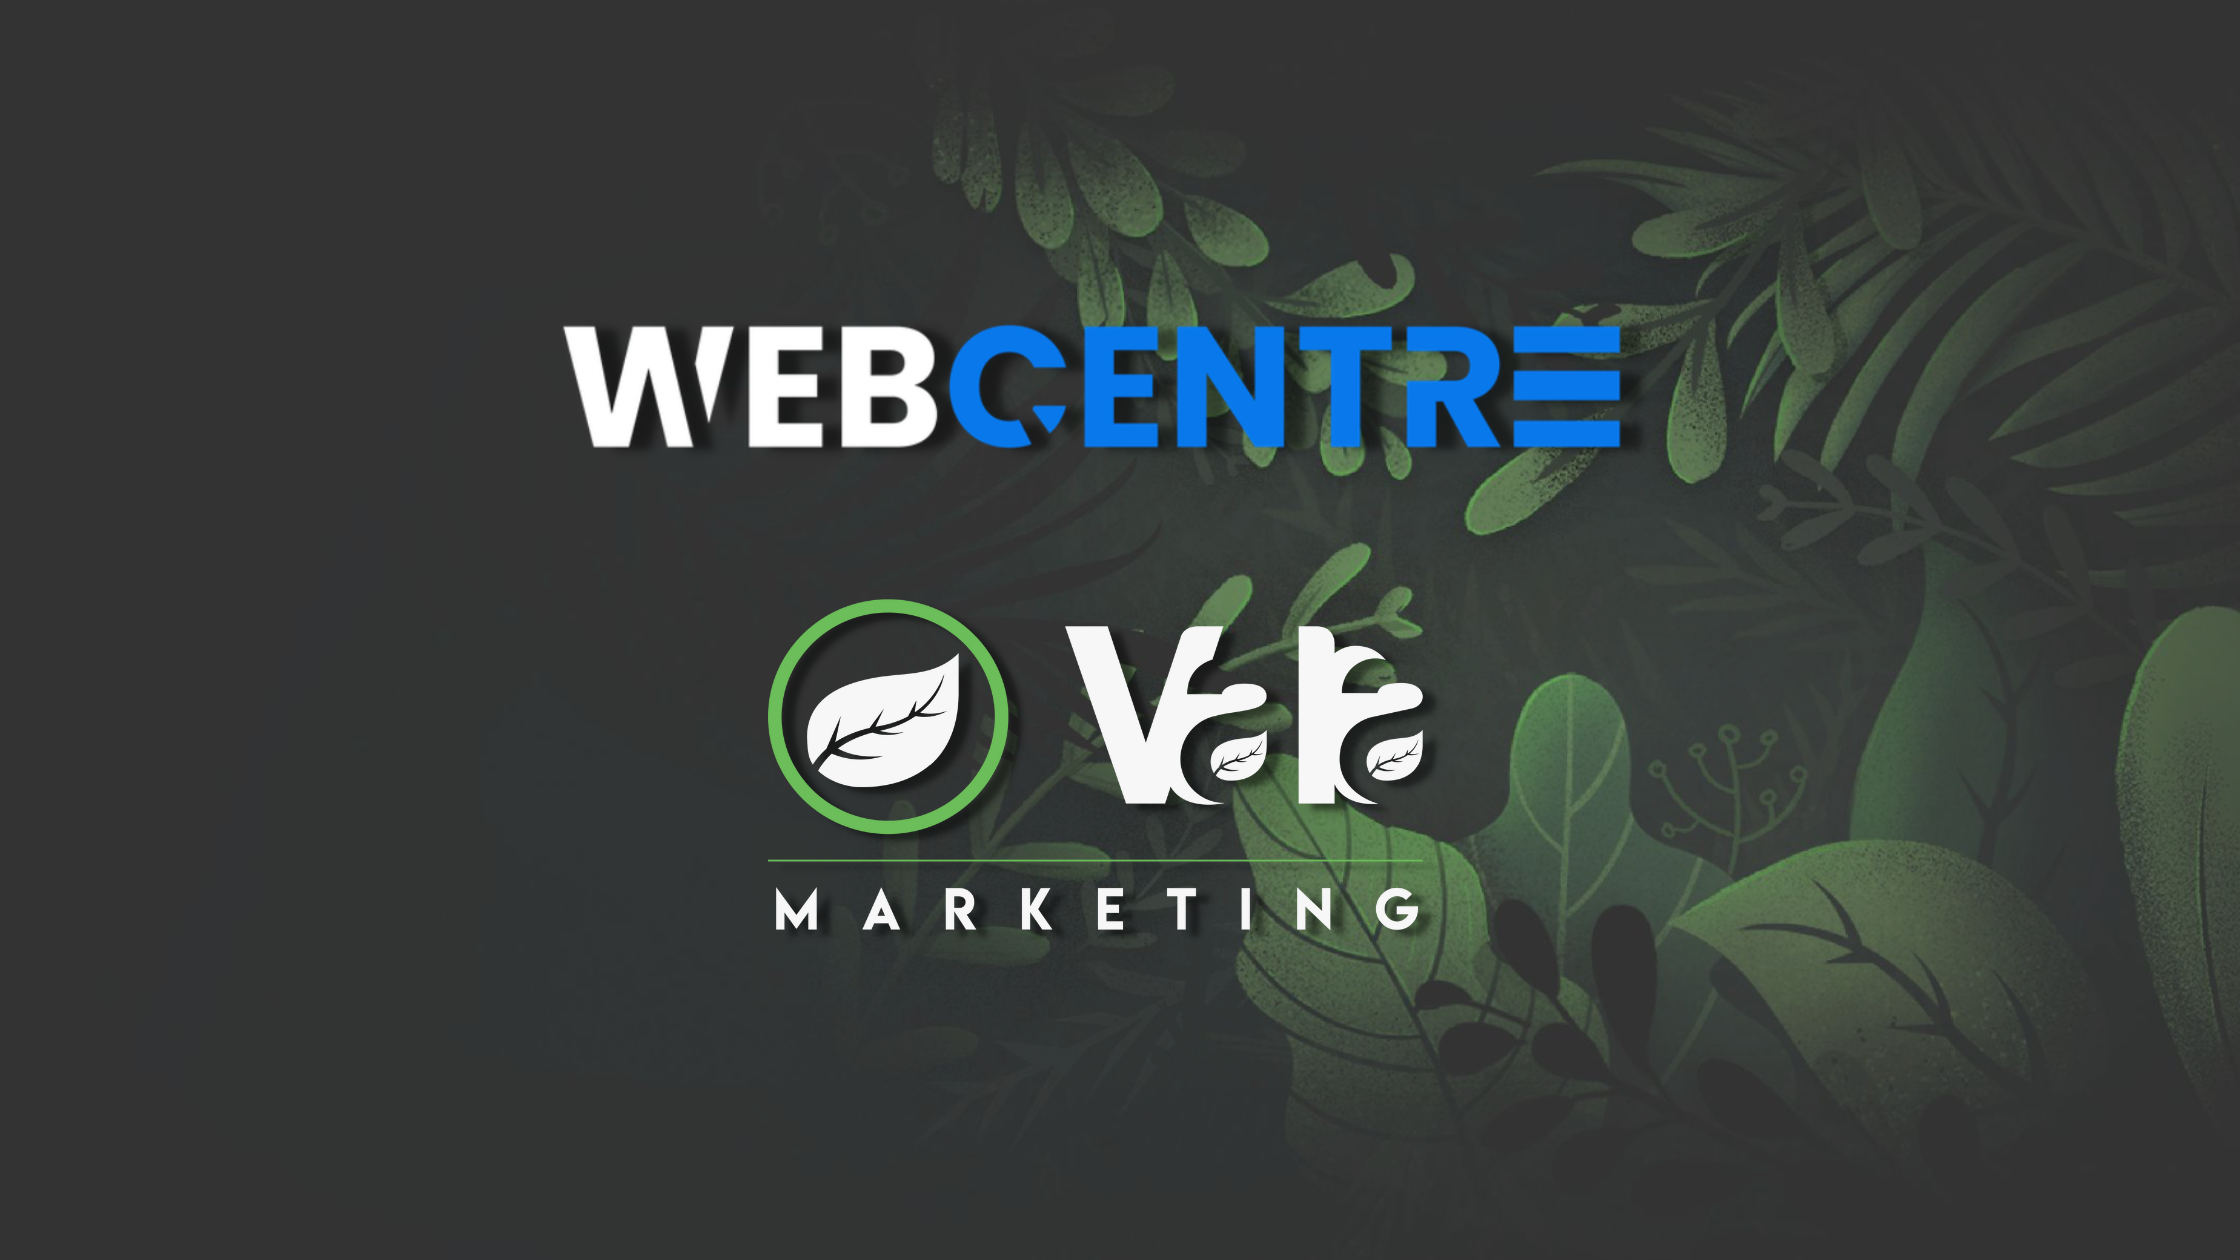 Web Centre and Vala Marketing Logos